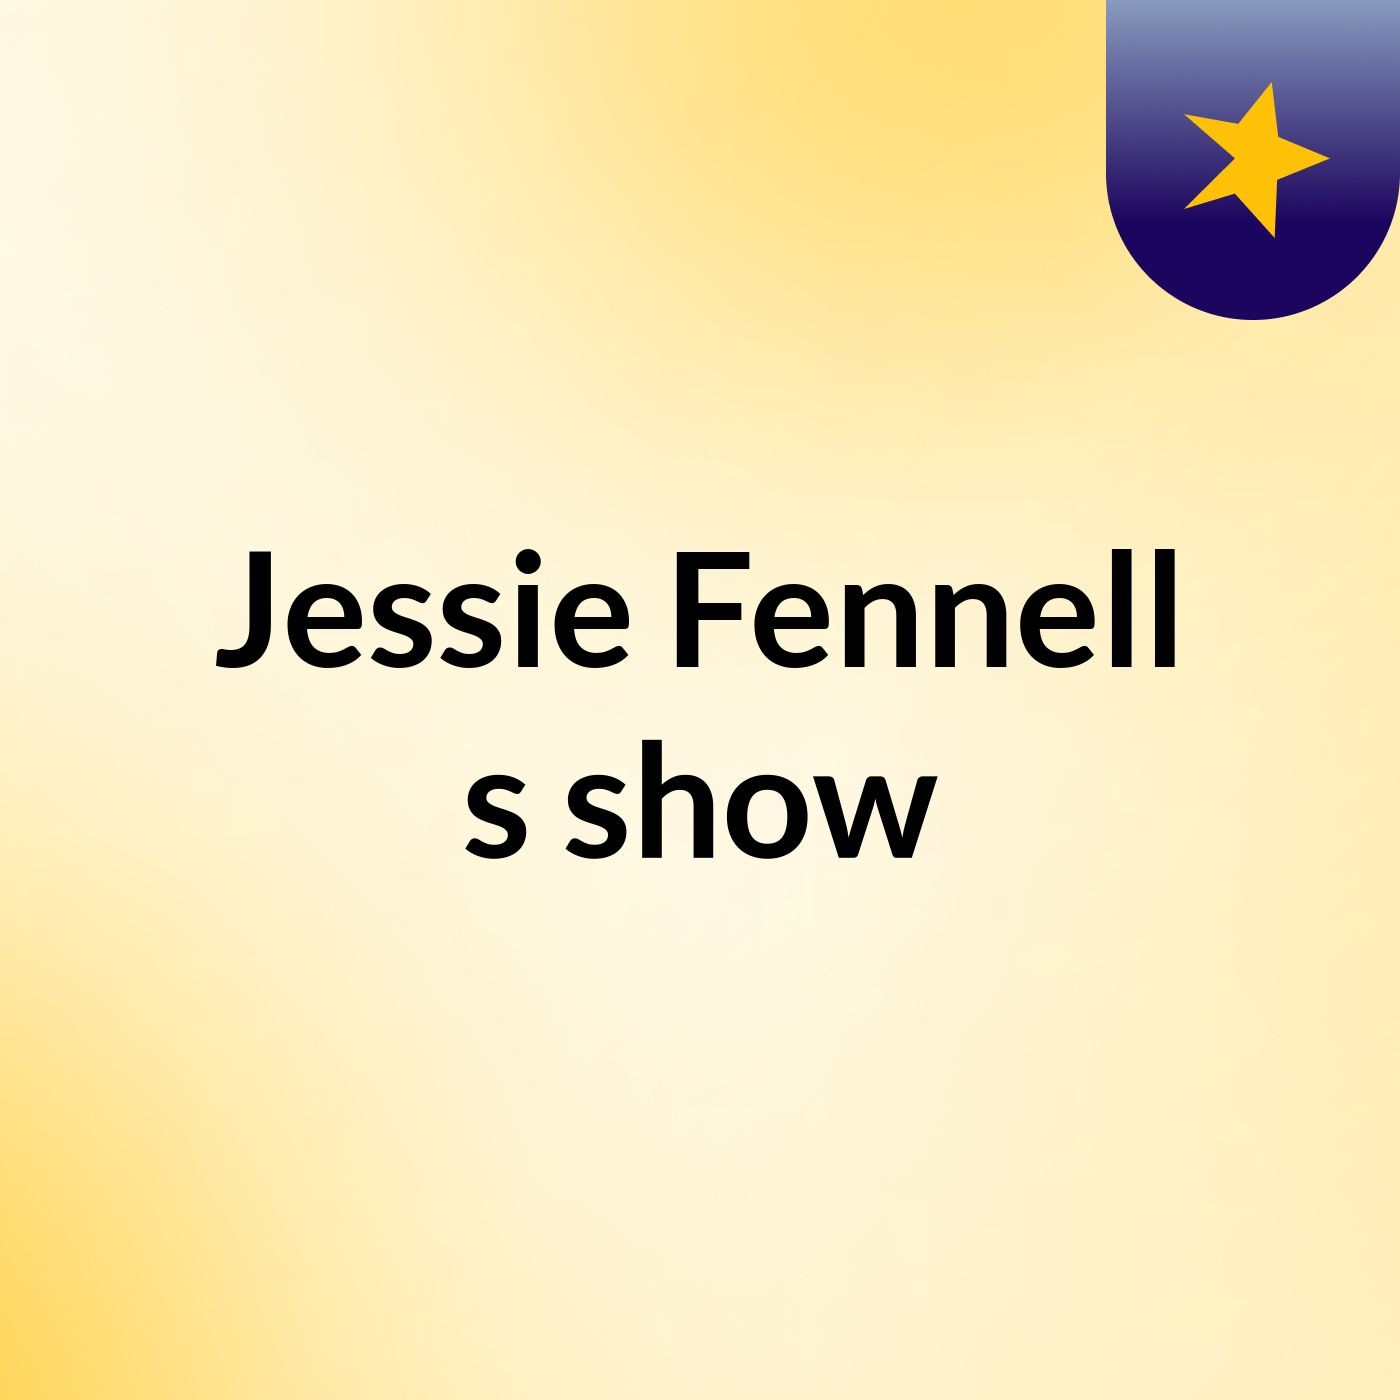 Jessie Fennell's show